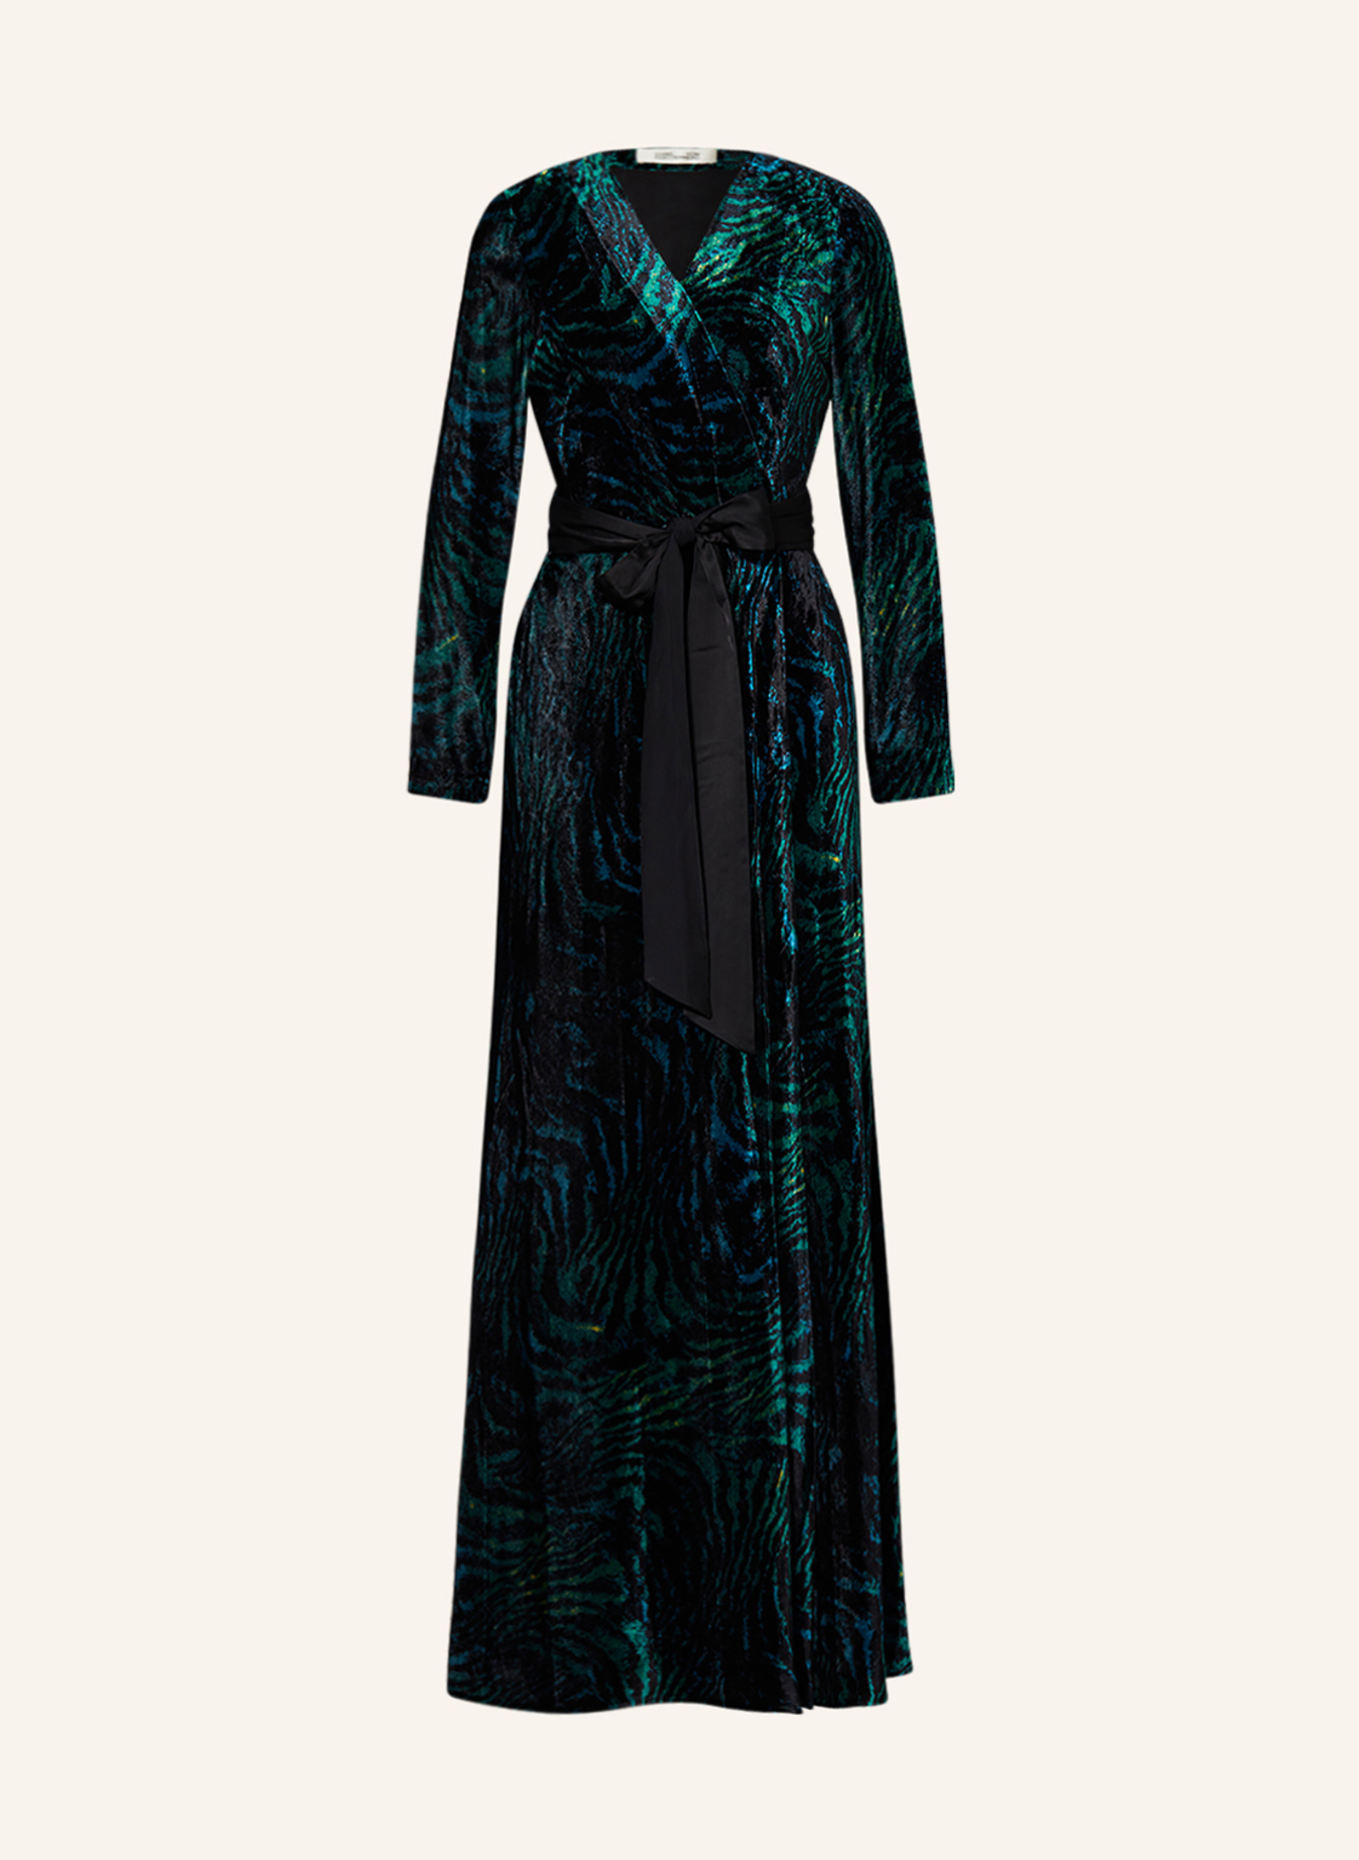 DIANE VON FURSTENBERG Wrap dress JARETH in velvet, Color: TEAL/ BLACK/ BLUE (Image 1)